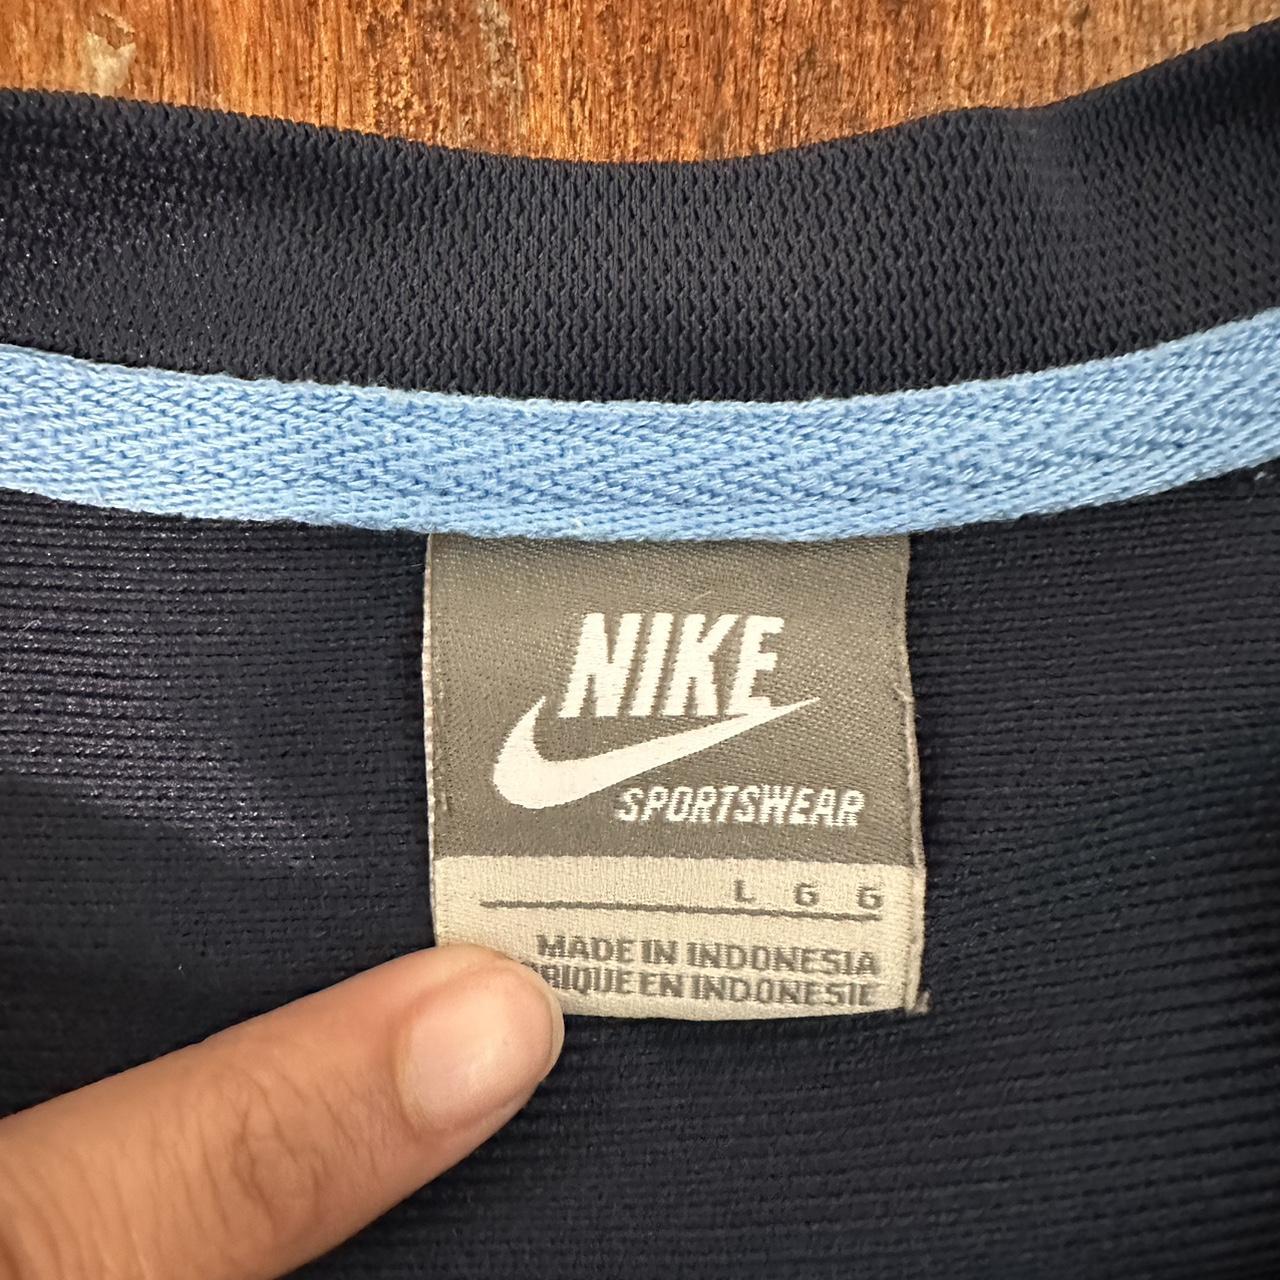 Vintage Nike embroidered shirt -size: Large -... - Depop